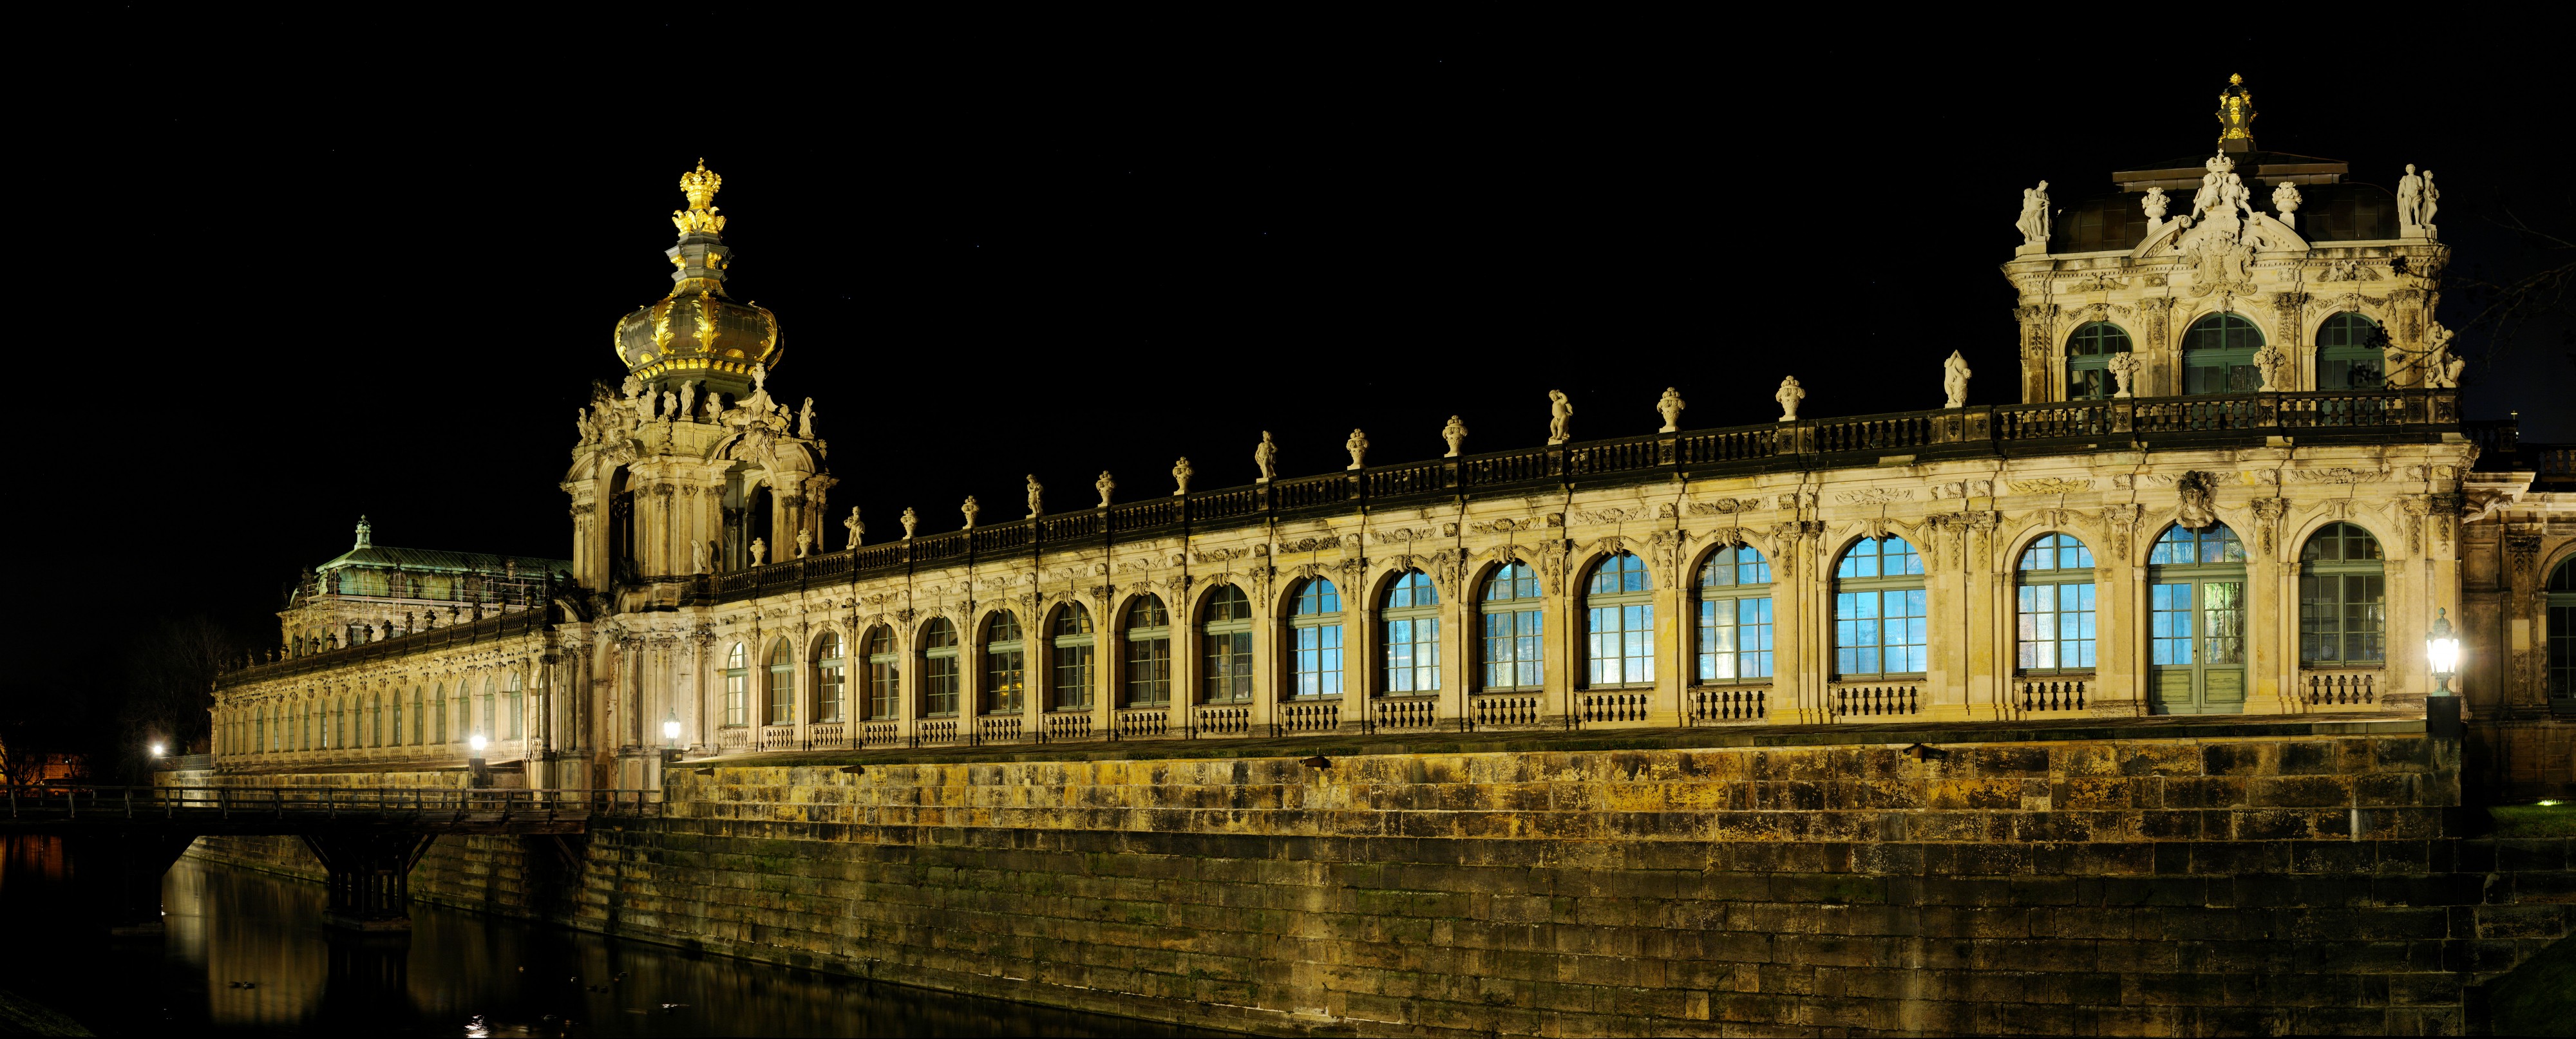 Dresden-Zwinger nacht-gp